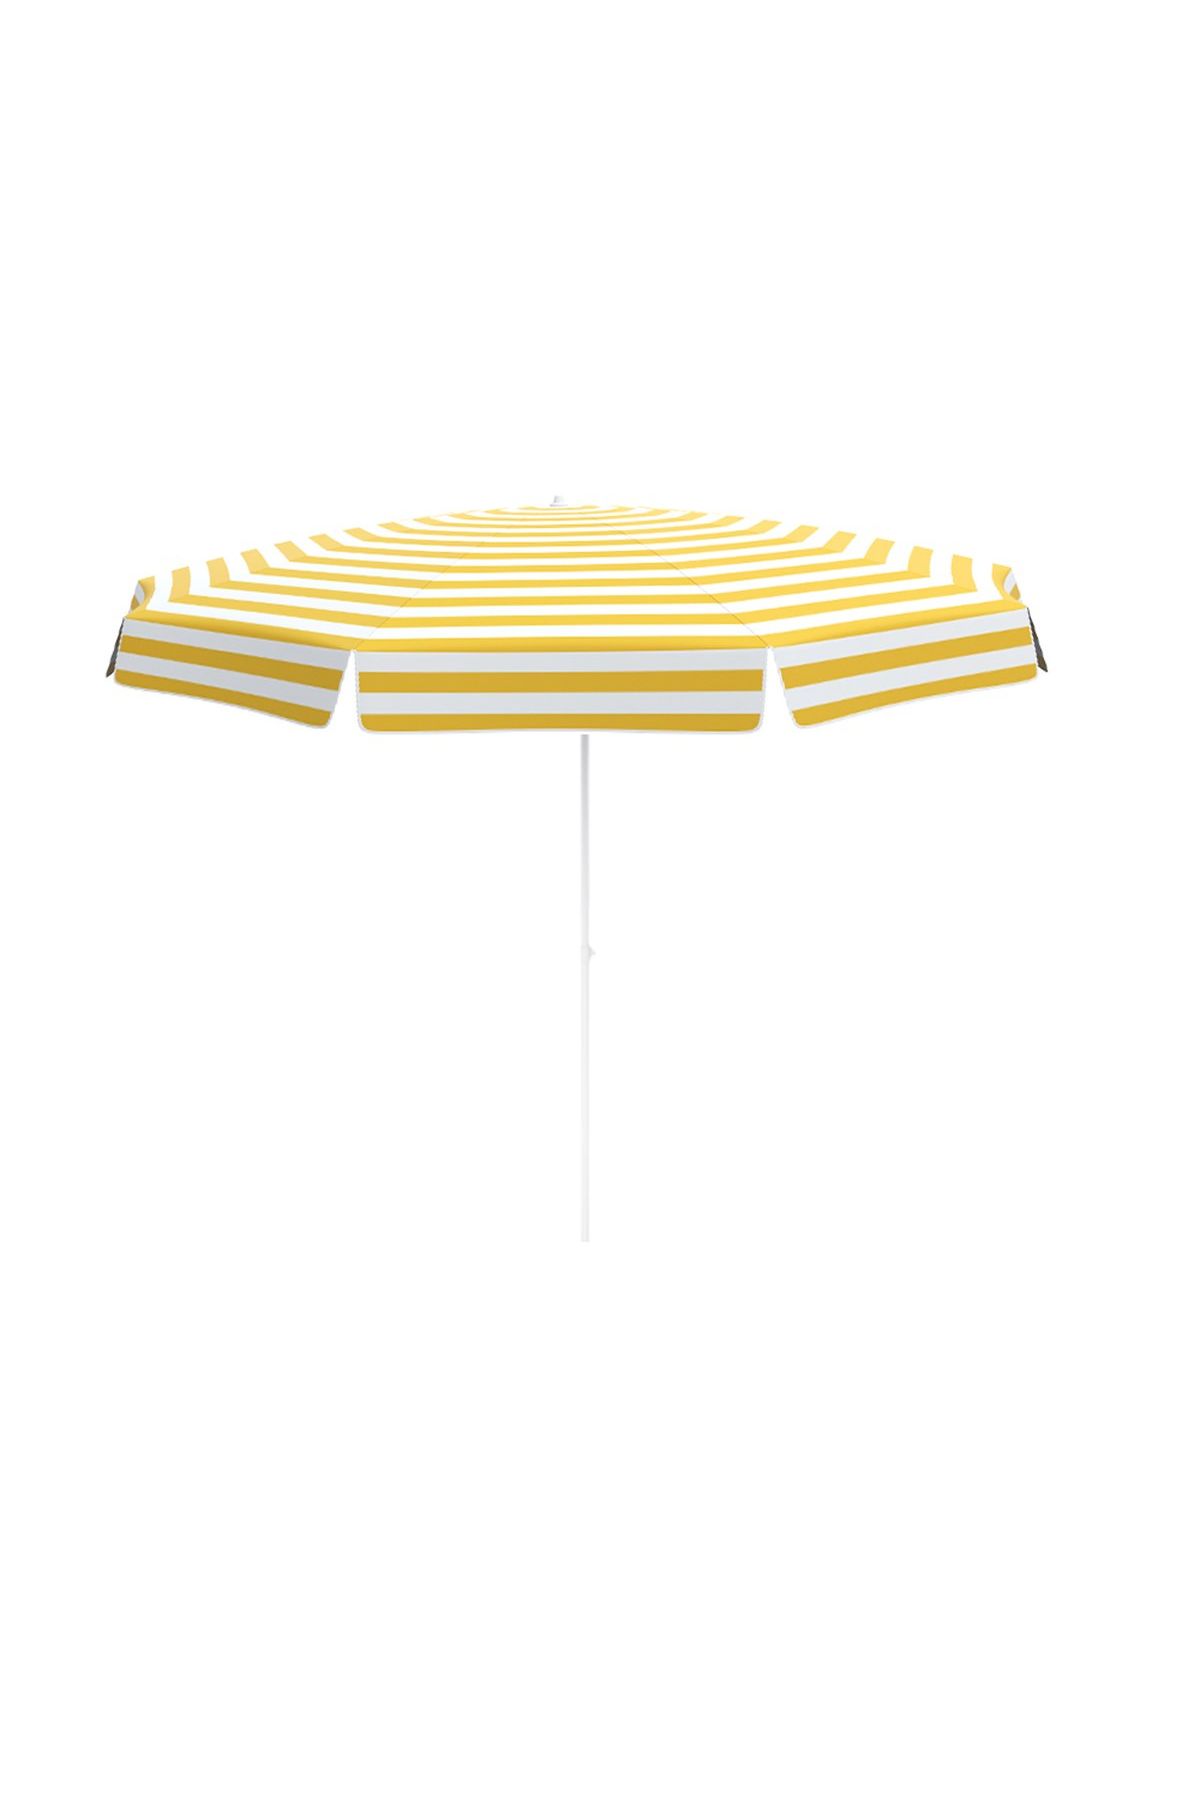 Alc Home Plaj/Balkon Şemsiyesi Etekli Polyester 200/10 301 Sarı-Beyaz Çizgili